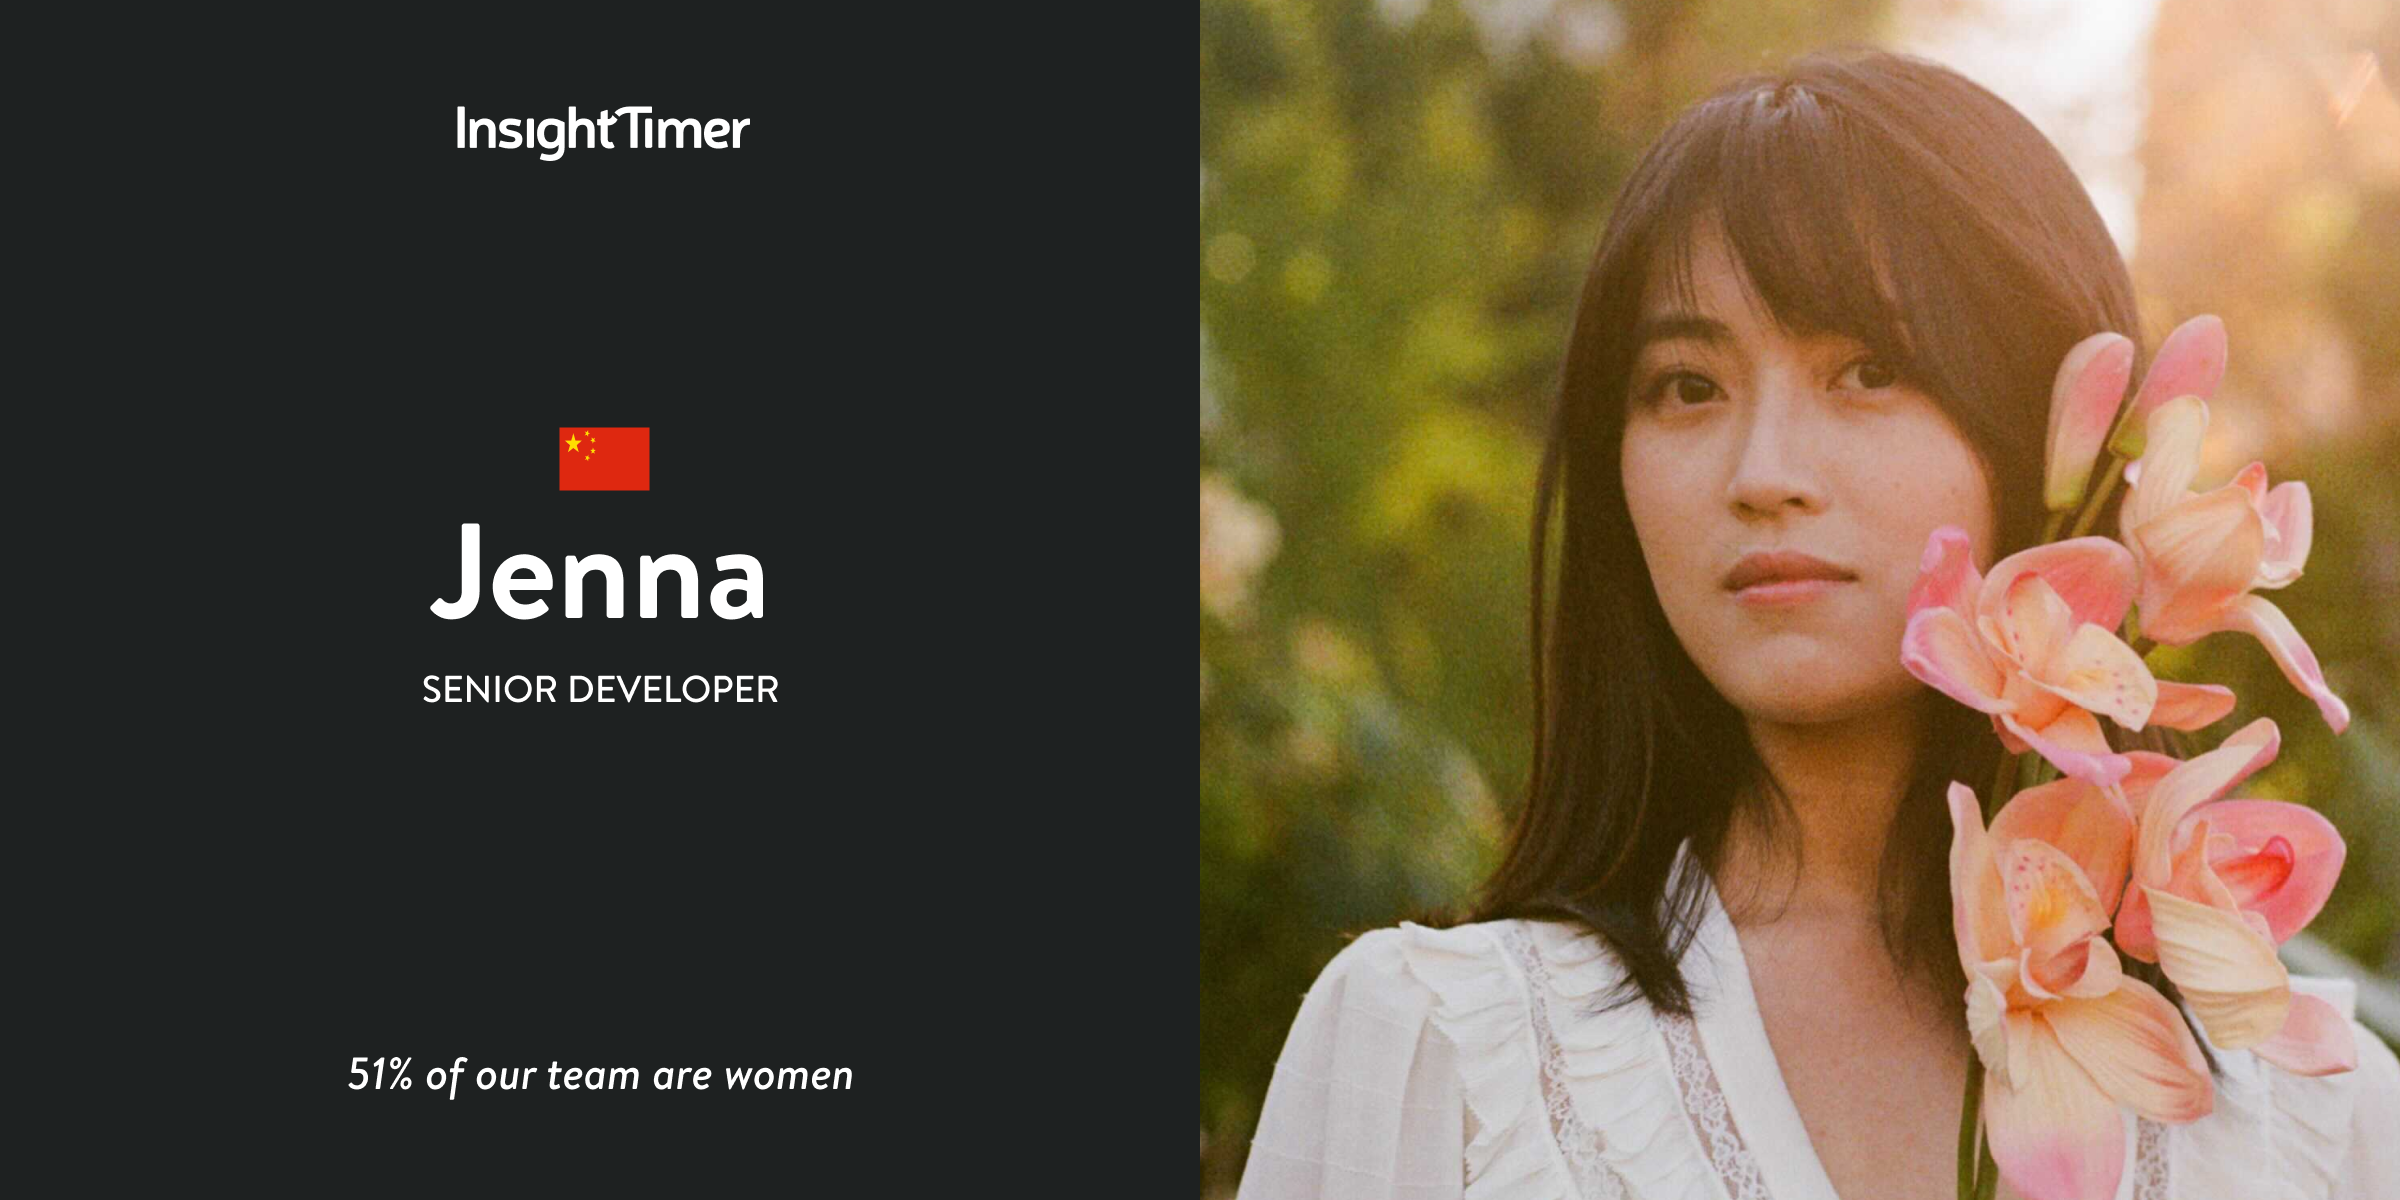 Meet Jenna – Senior Developer